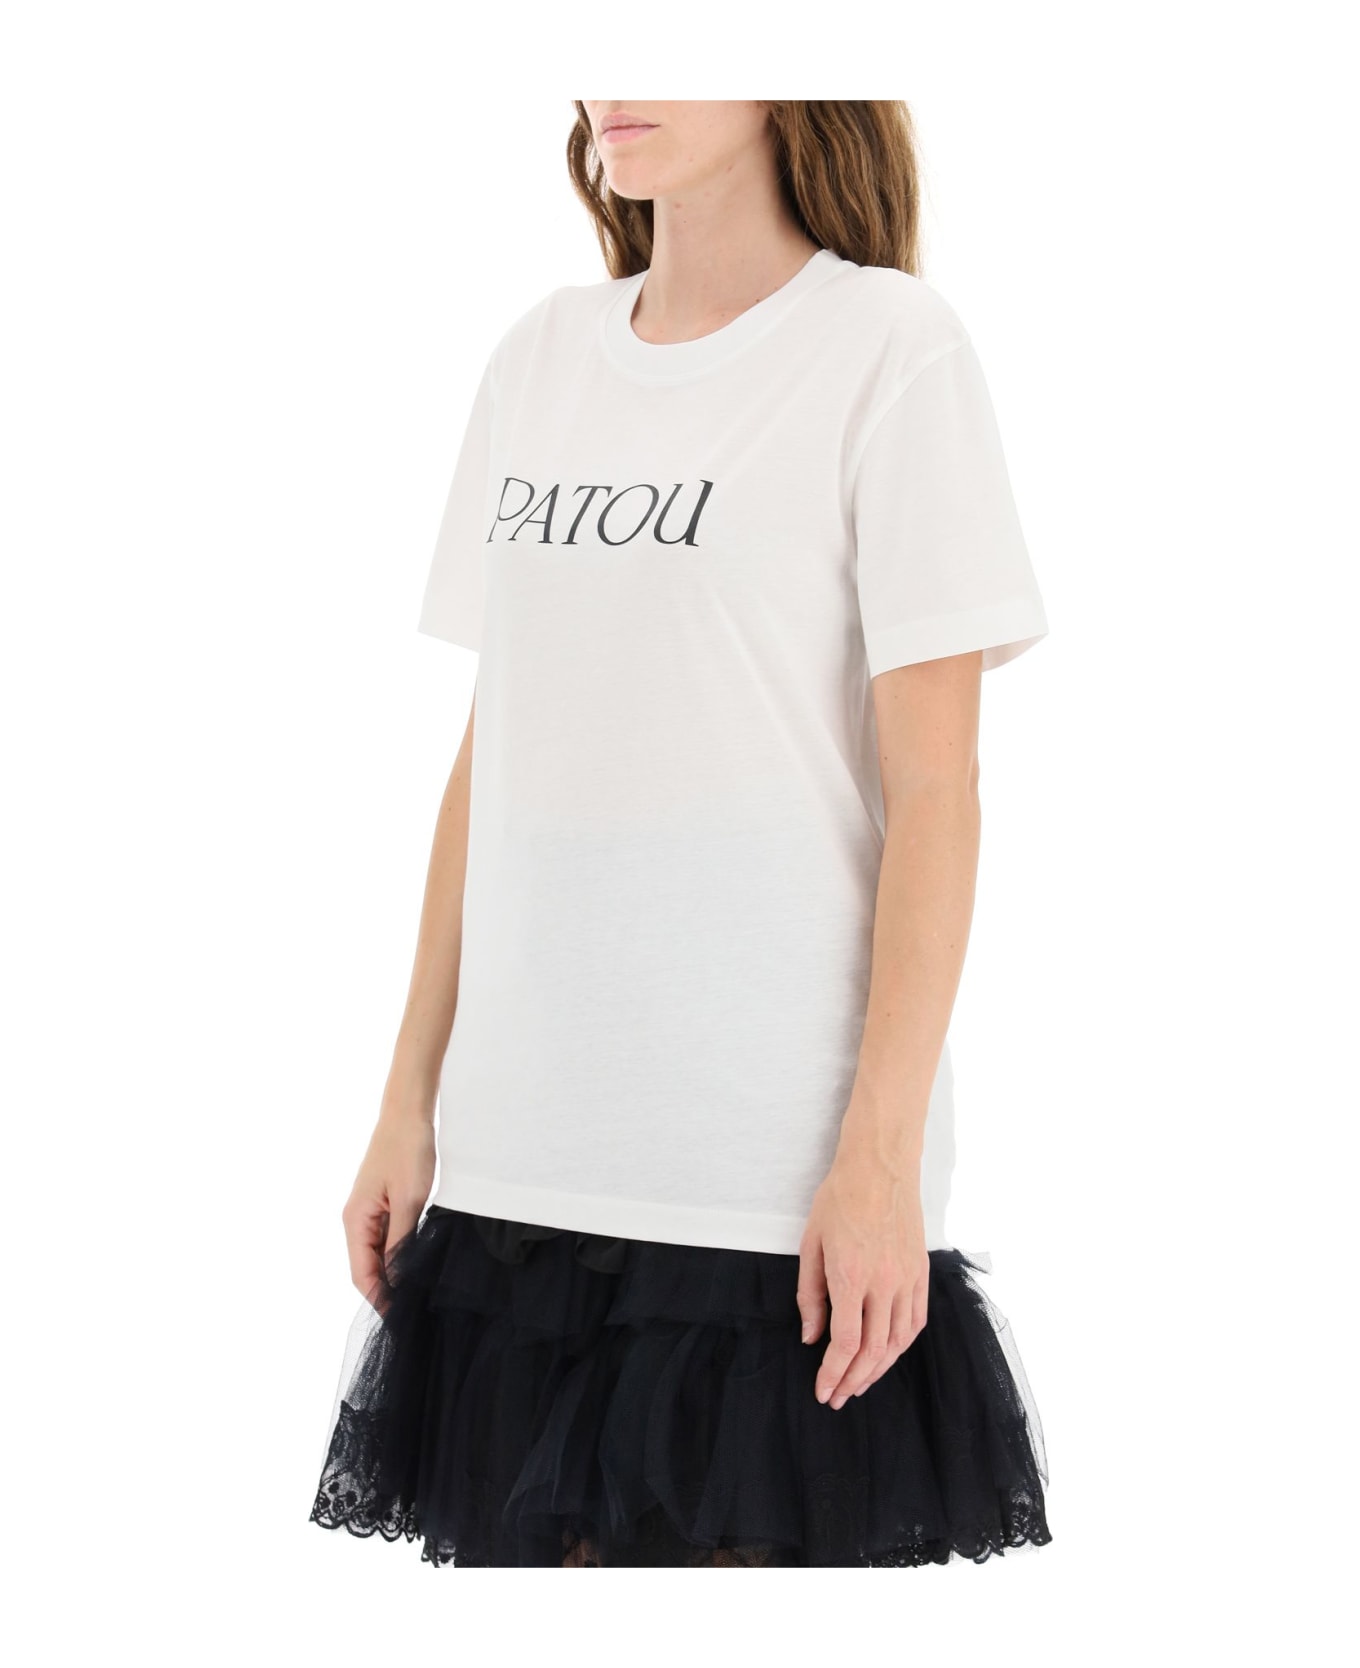 Patou Logo Print T-shirt - W White Tシャツ